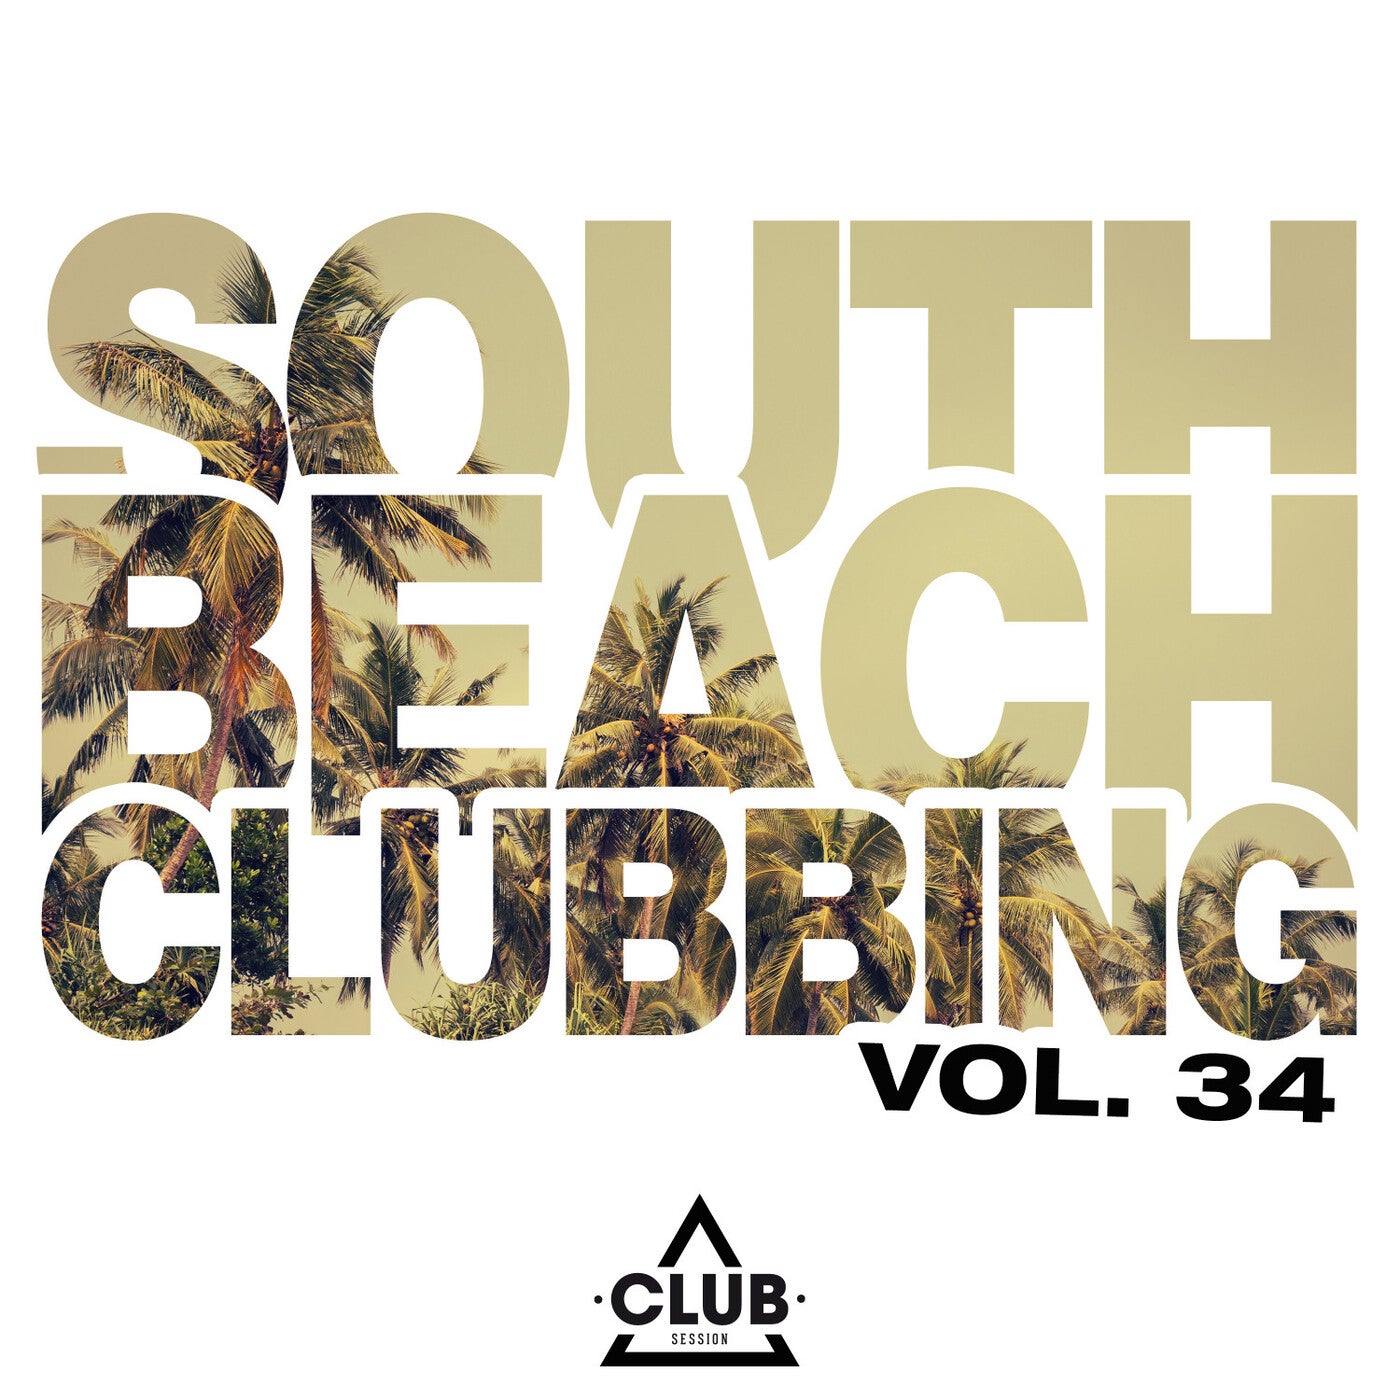 South Beach Clubbing Vol. 34